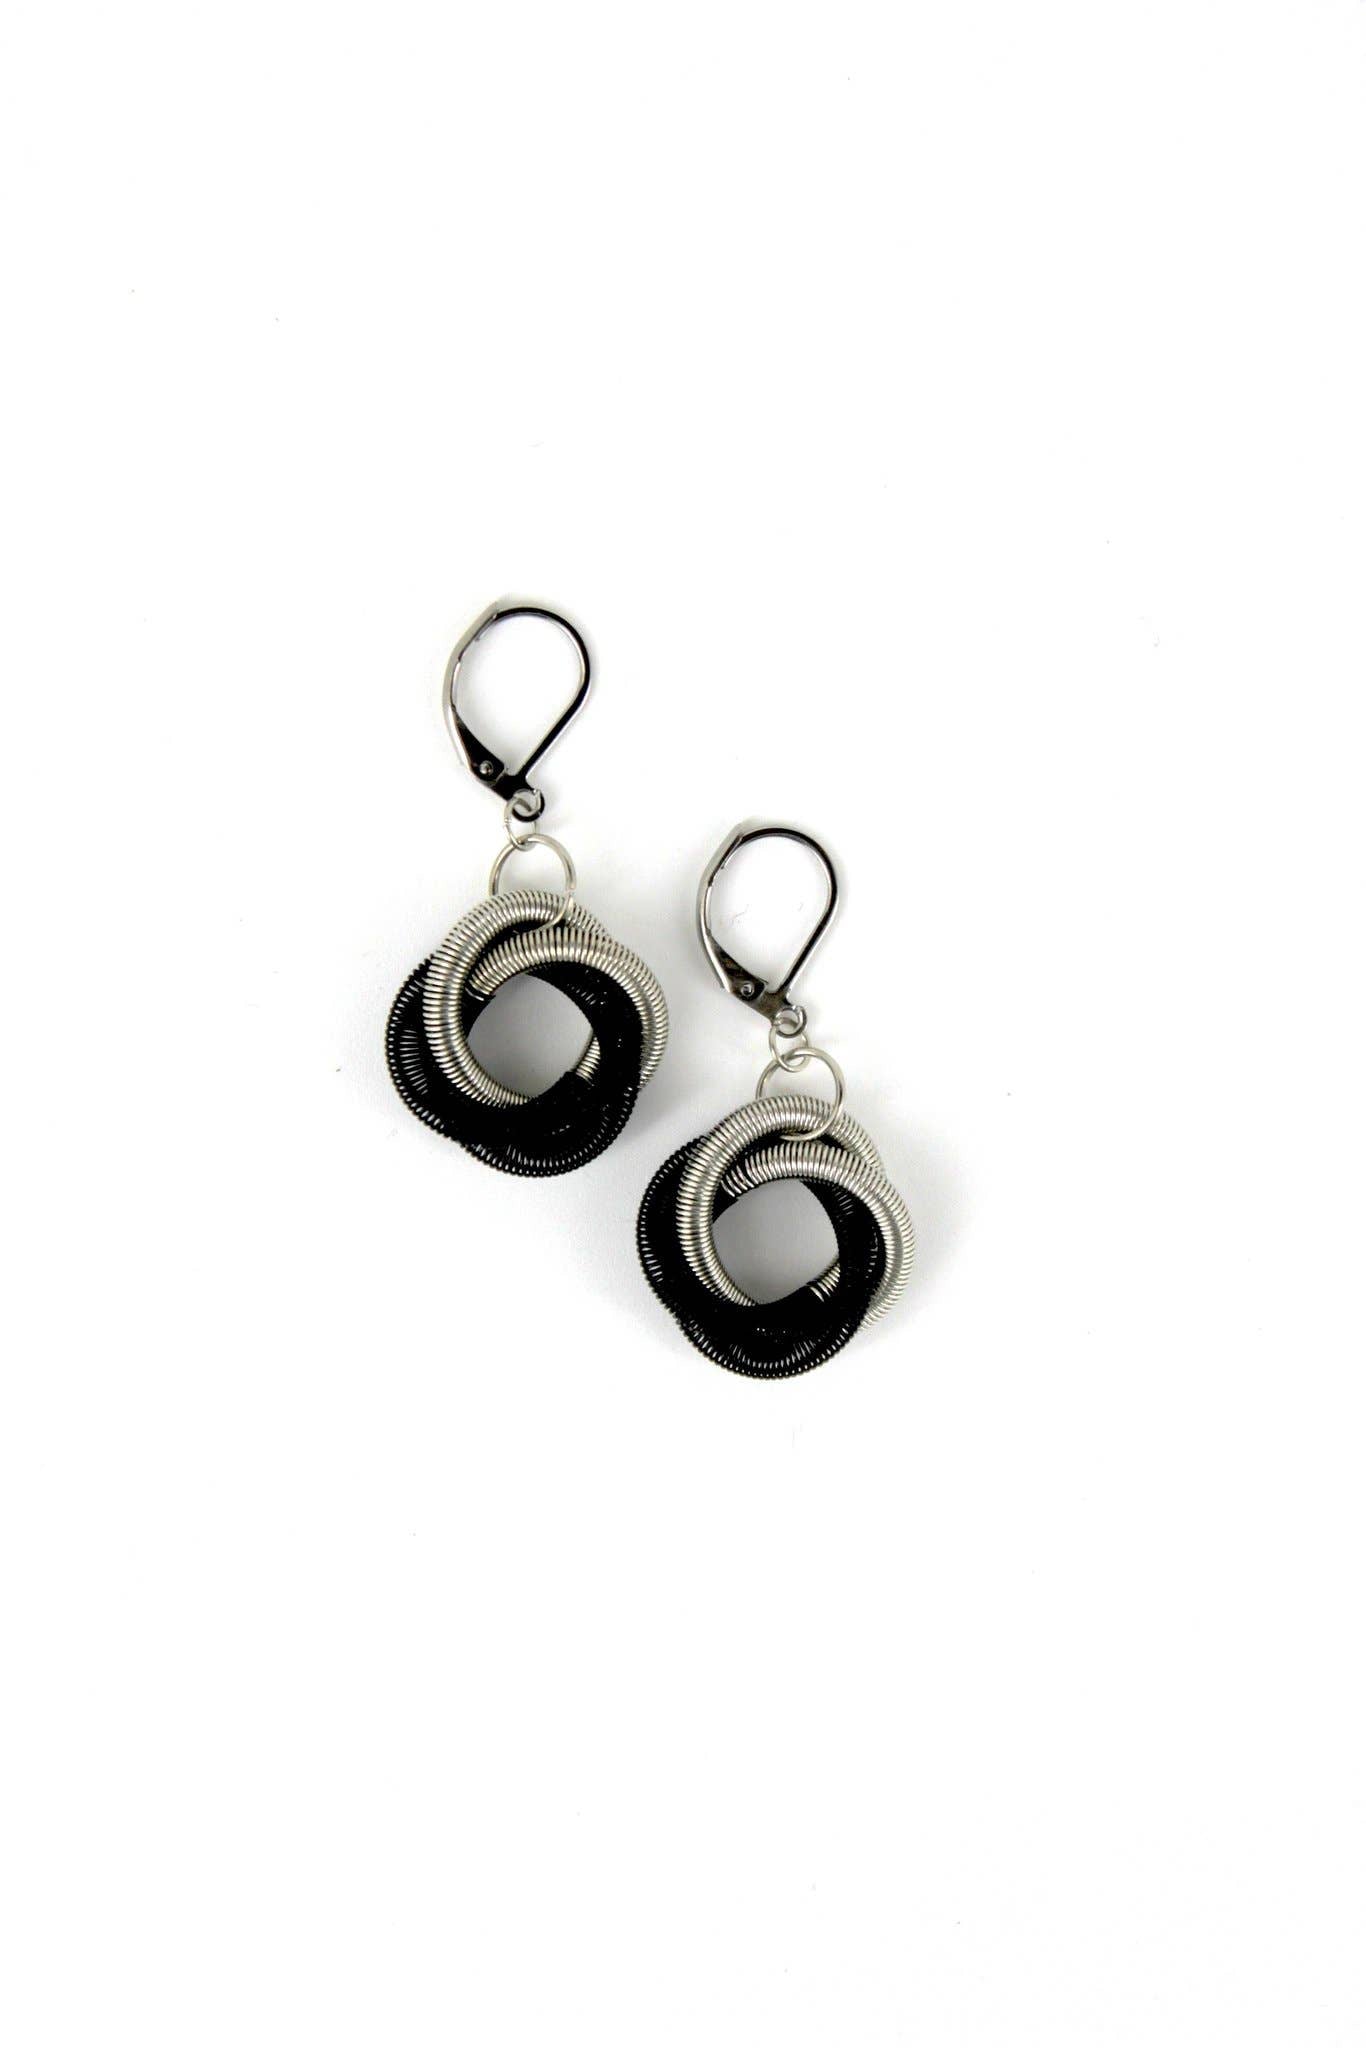 Sea Lily - L3H-E - Silver/Black Twist Loop Earring